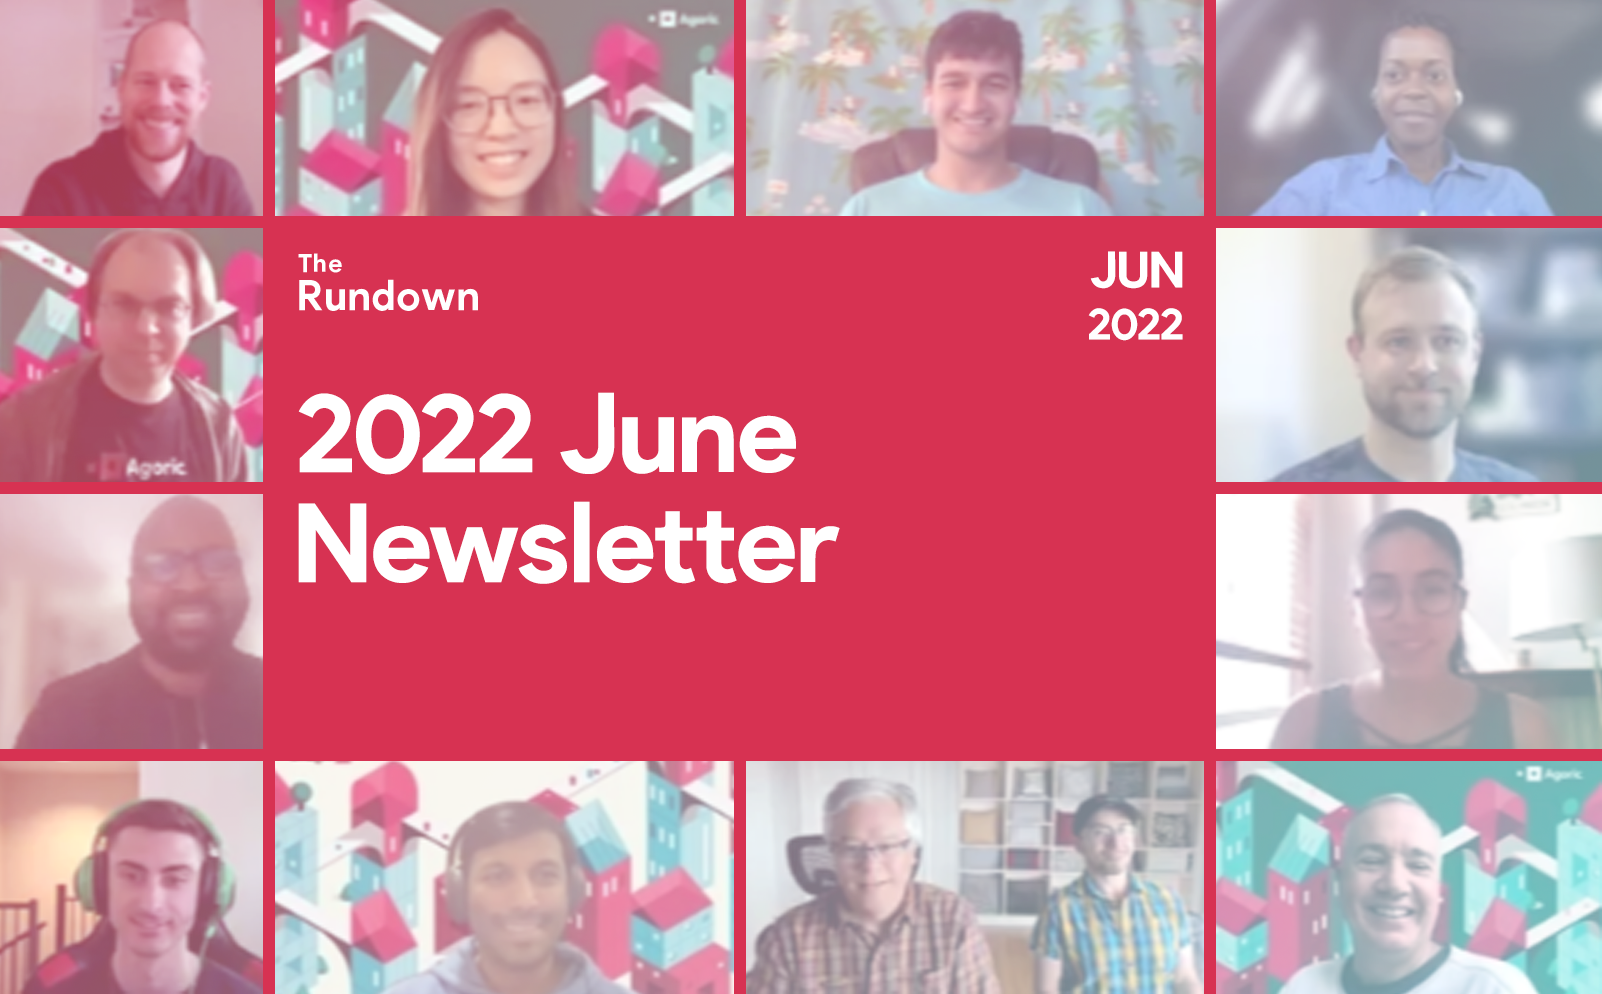 June 2022 Newsletter: BLD Distribution, Inter Protocol, Dev Engagement